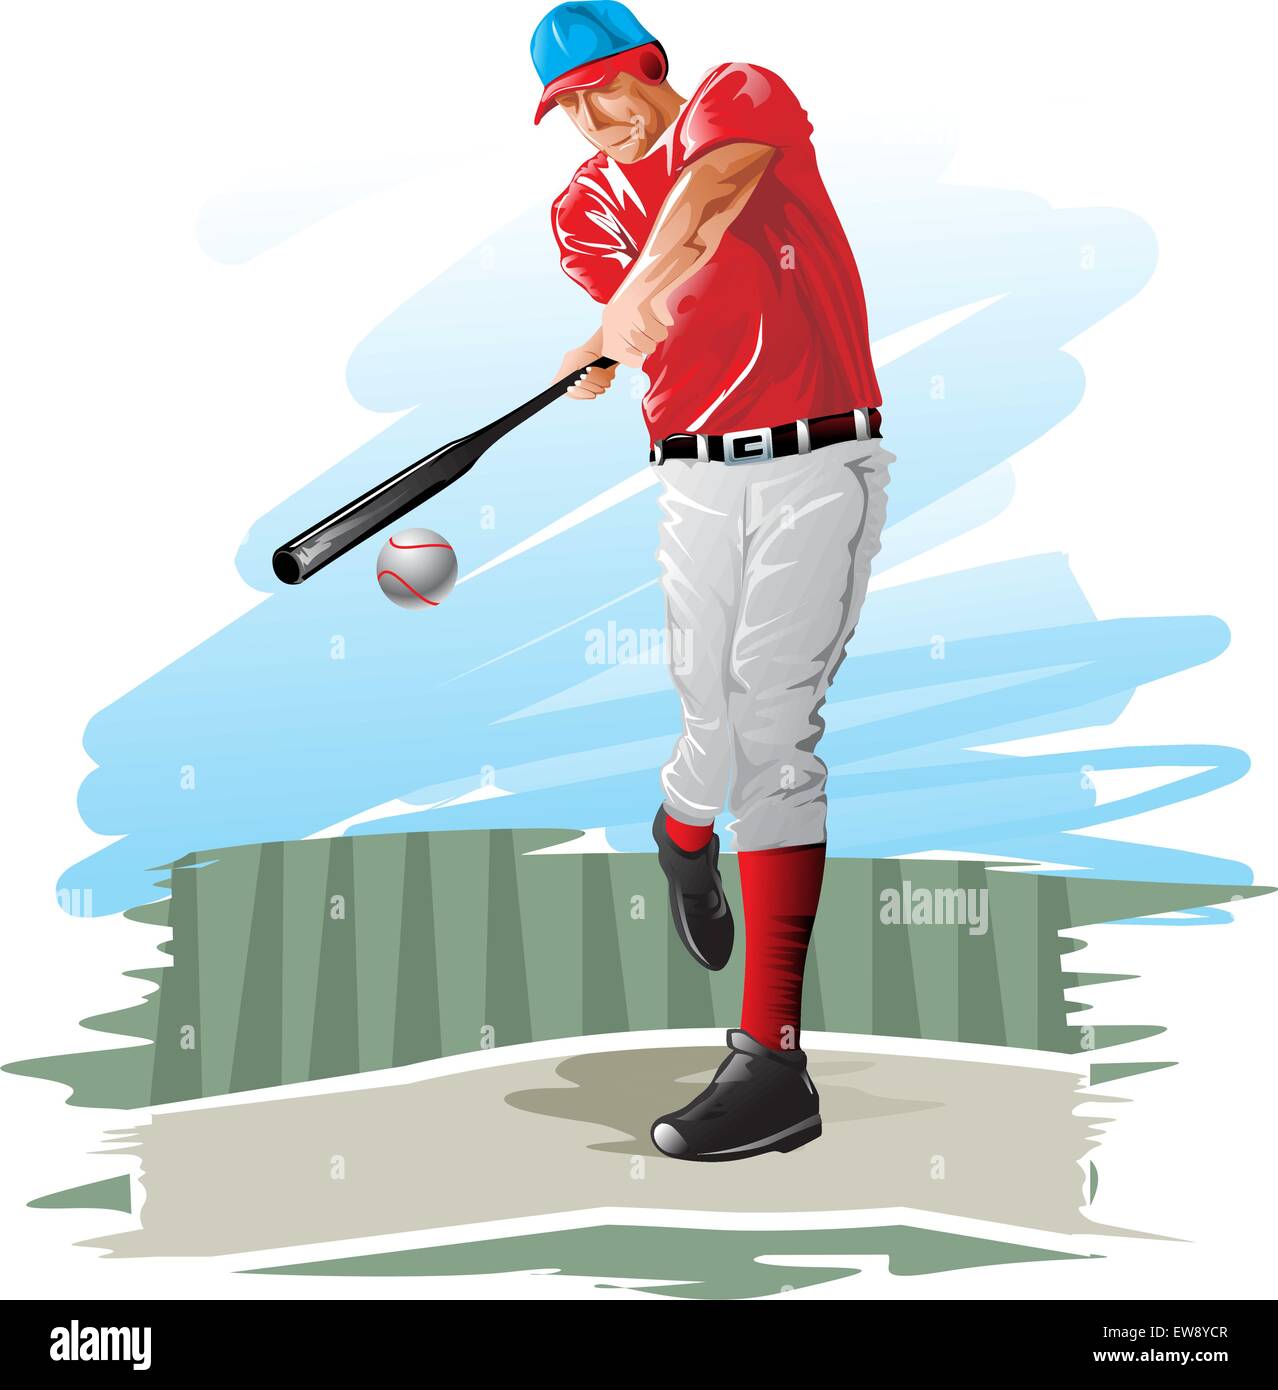 Joueur de baseball, batter, vector illustration Illustration de Vecteur